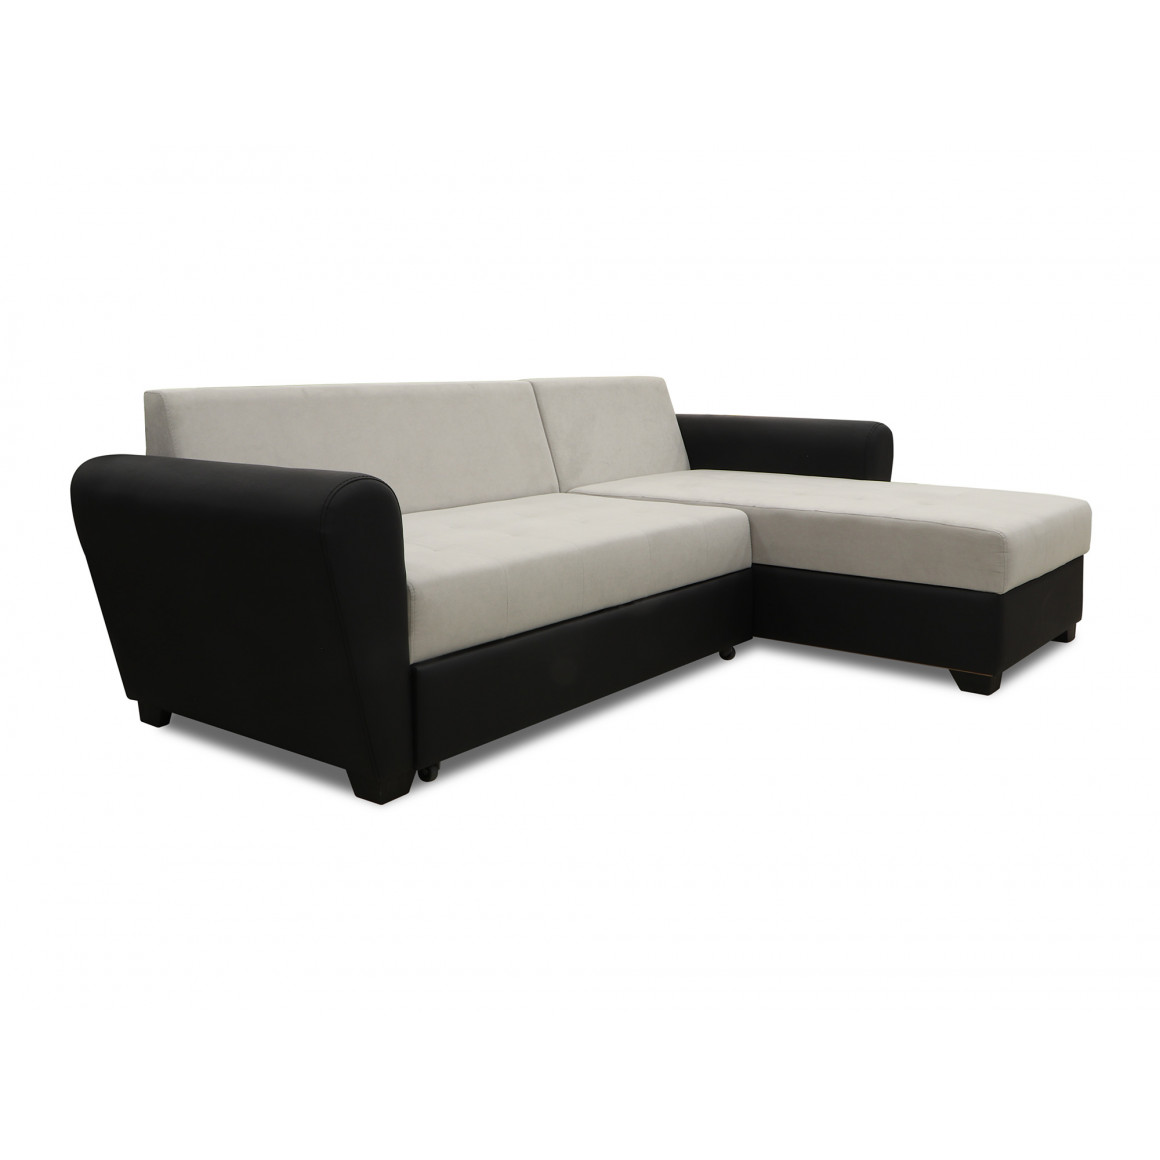 sofa HOBEL CORNER MODERN BLACK 4503/ GREY VIVALDI 6 (4)